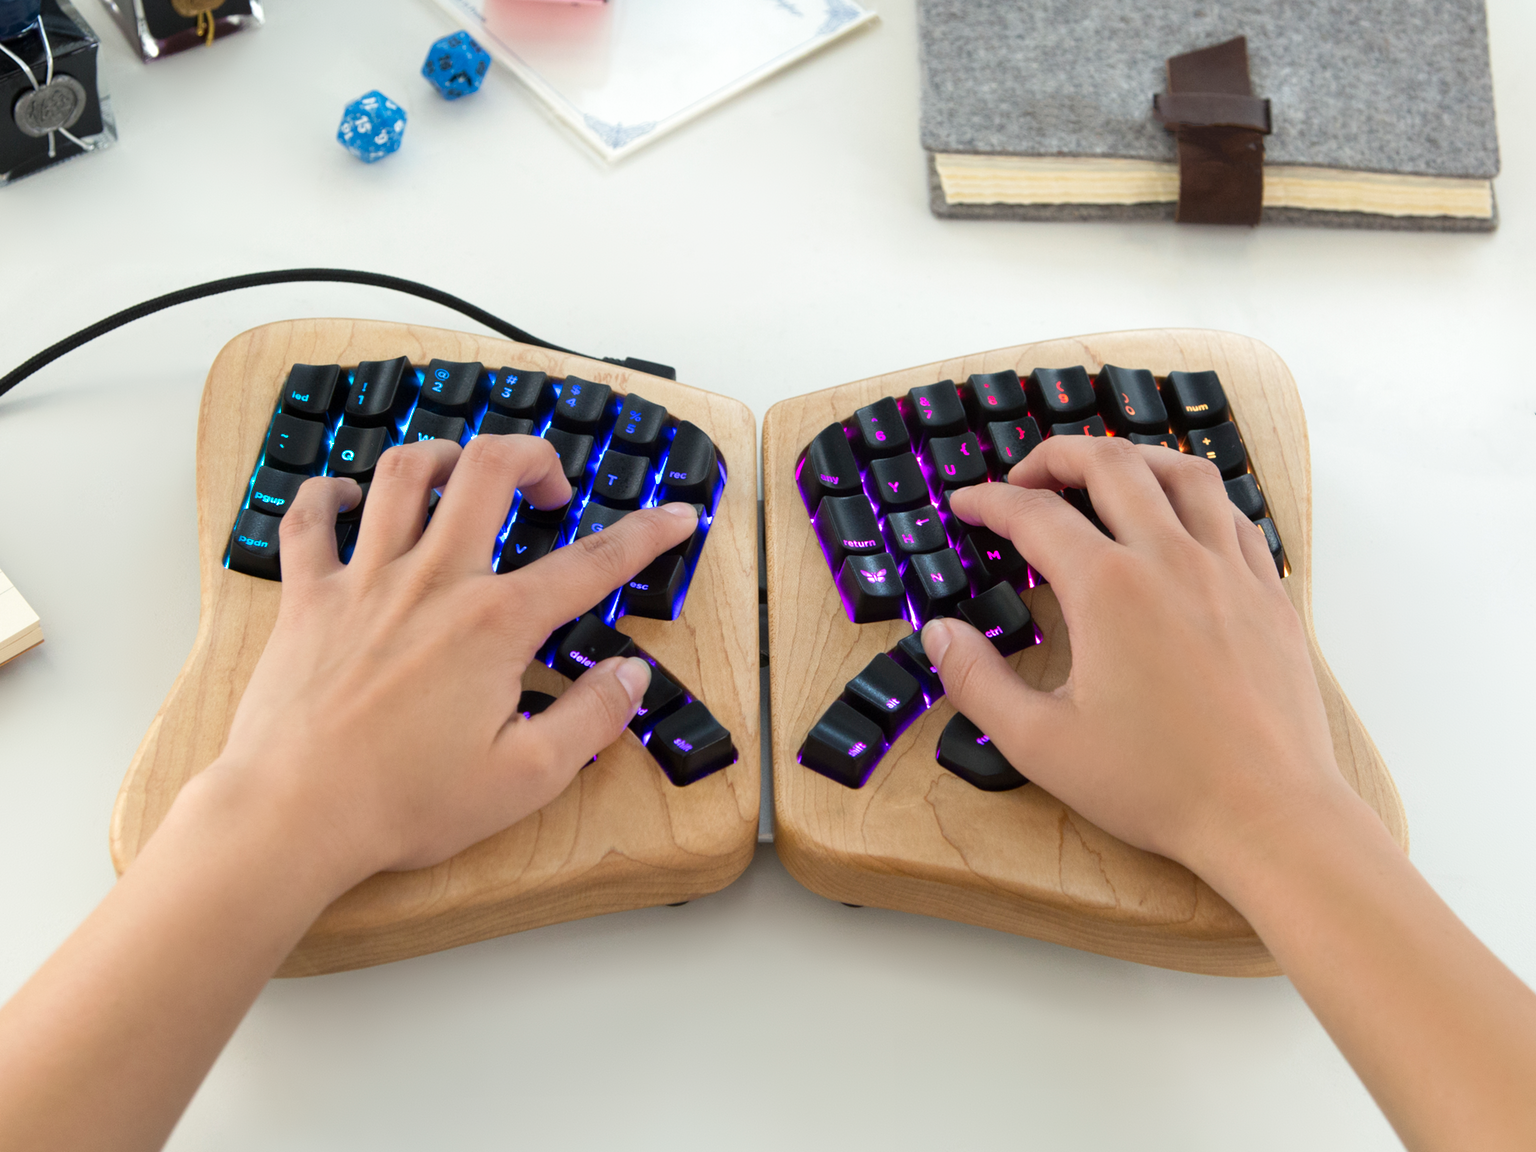 Сплит-клавиатура обеспечивает естественное положение кистей рук